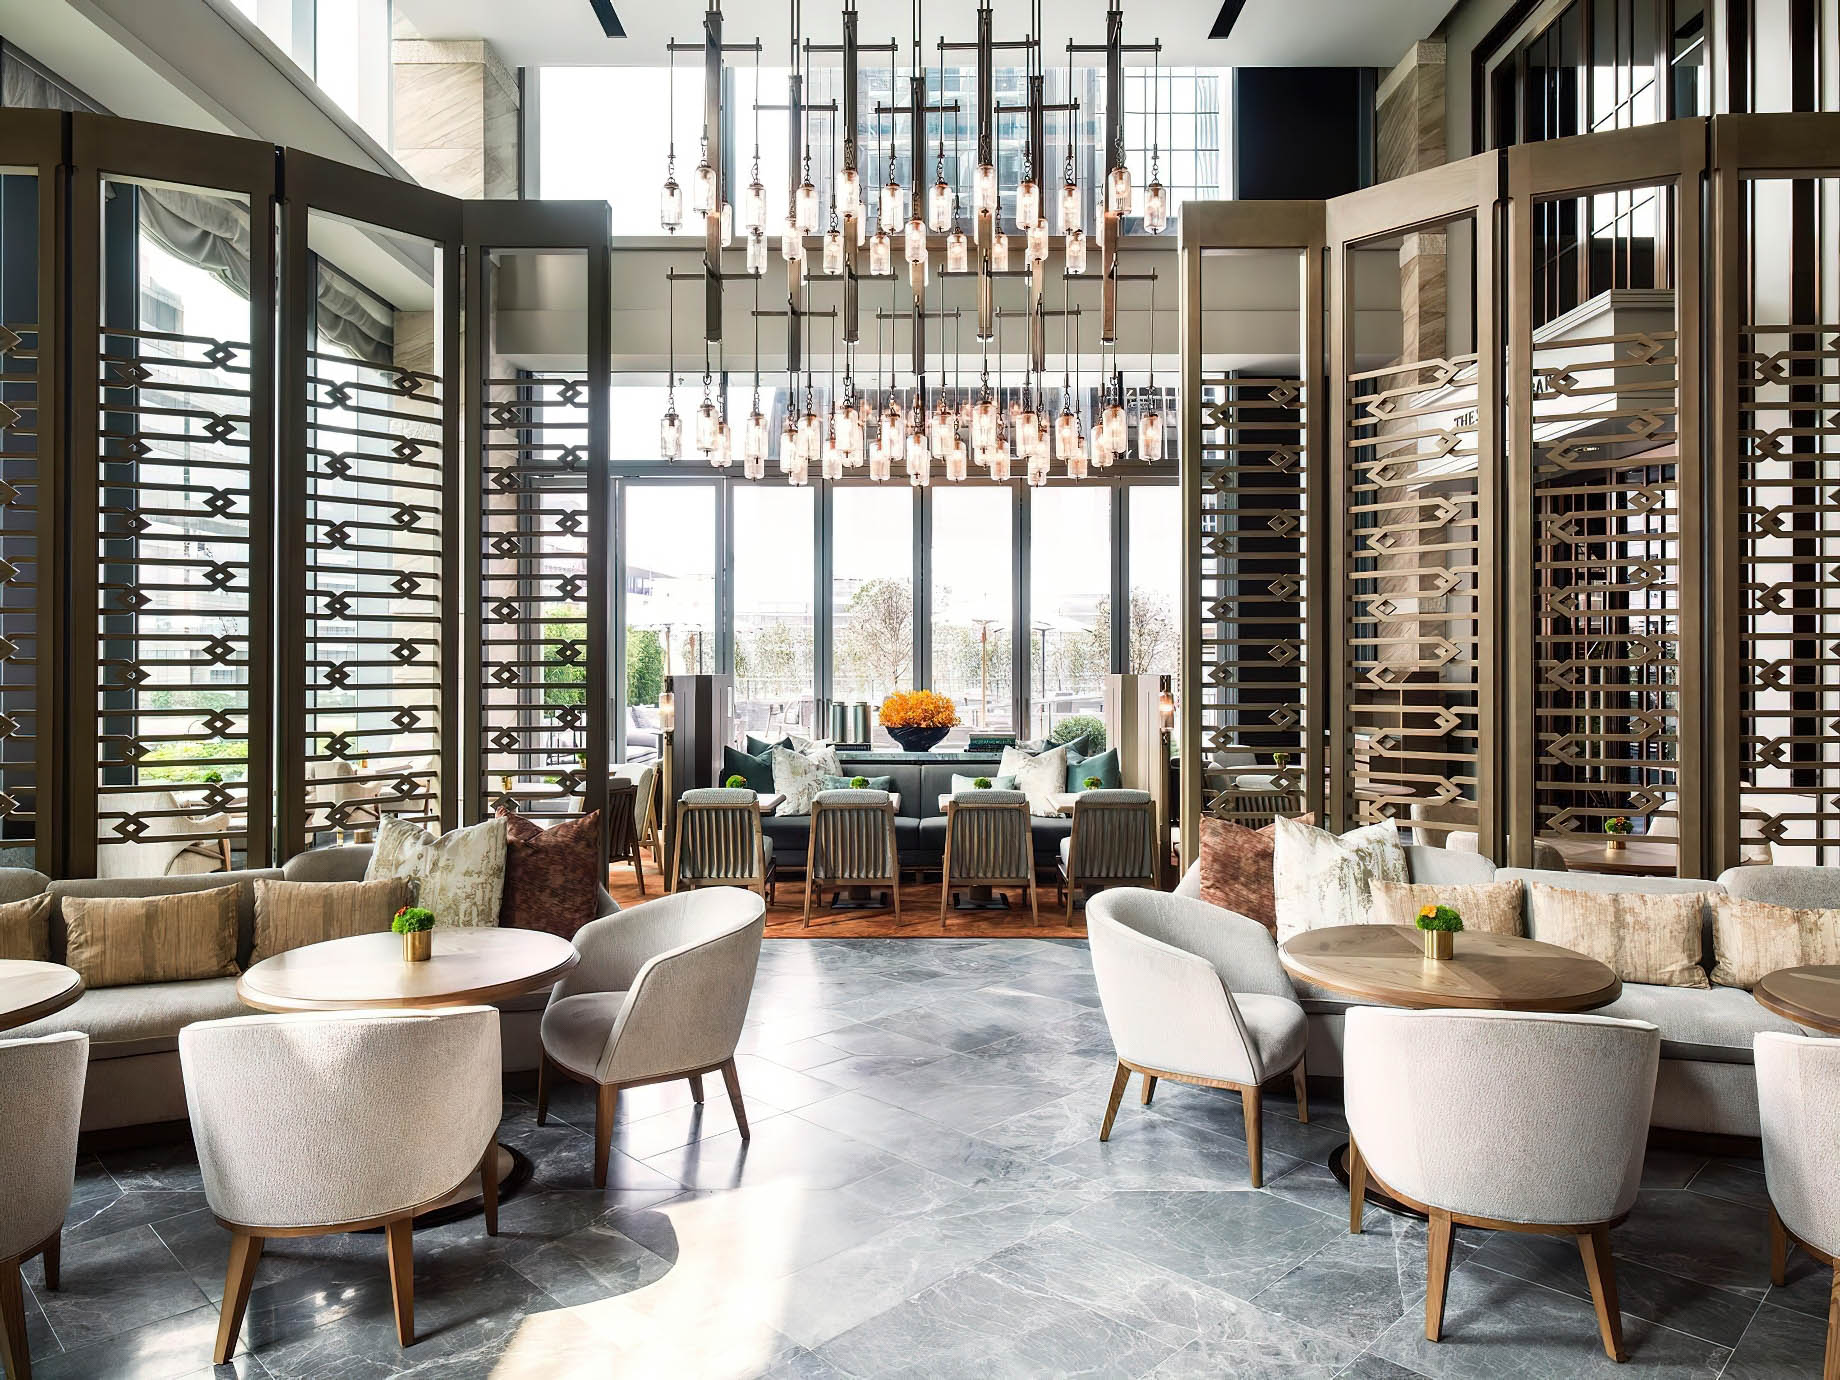 The St. Regis Hong Kong Hotel – Wan Chai, Hong Kong – Restaurant Interior Design